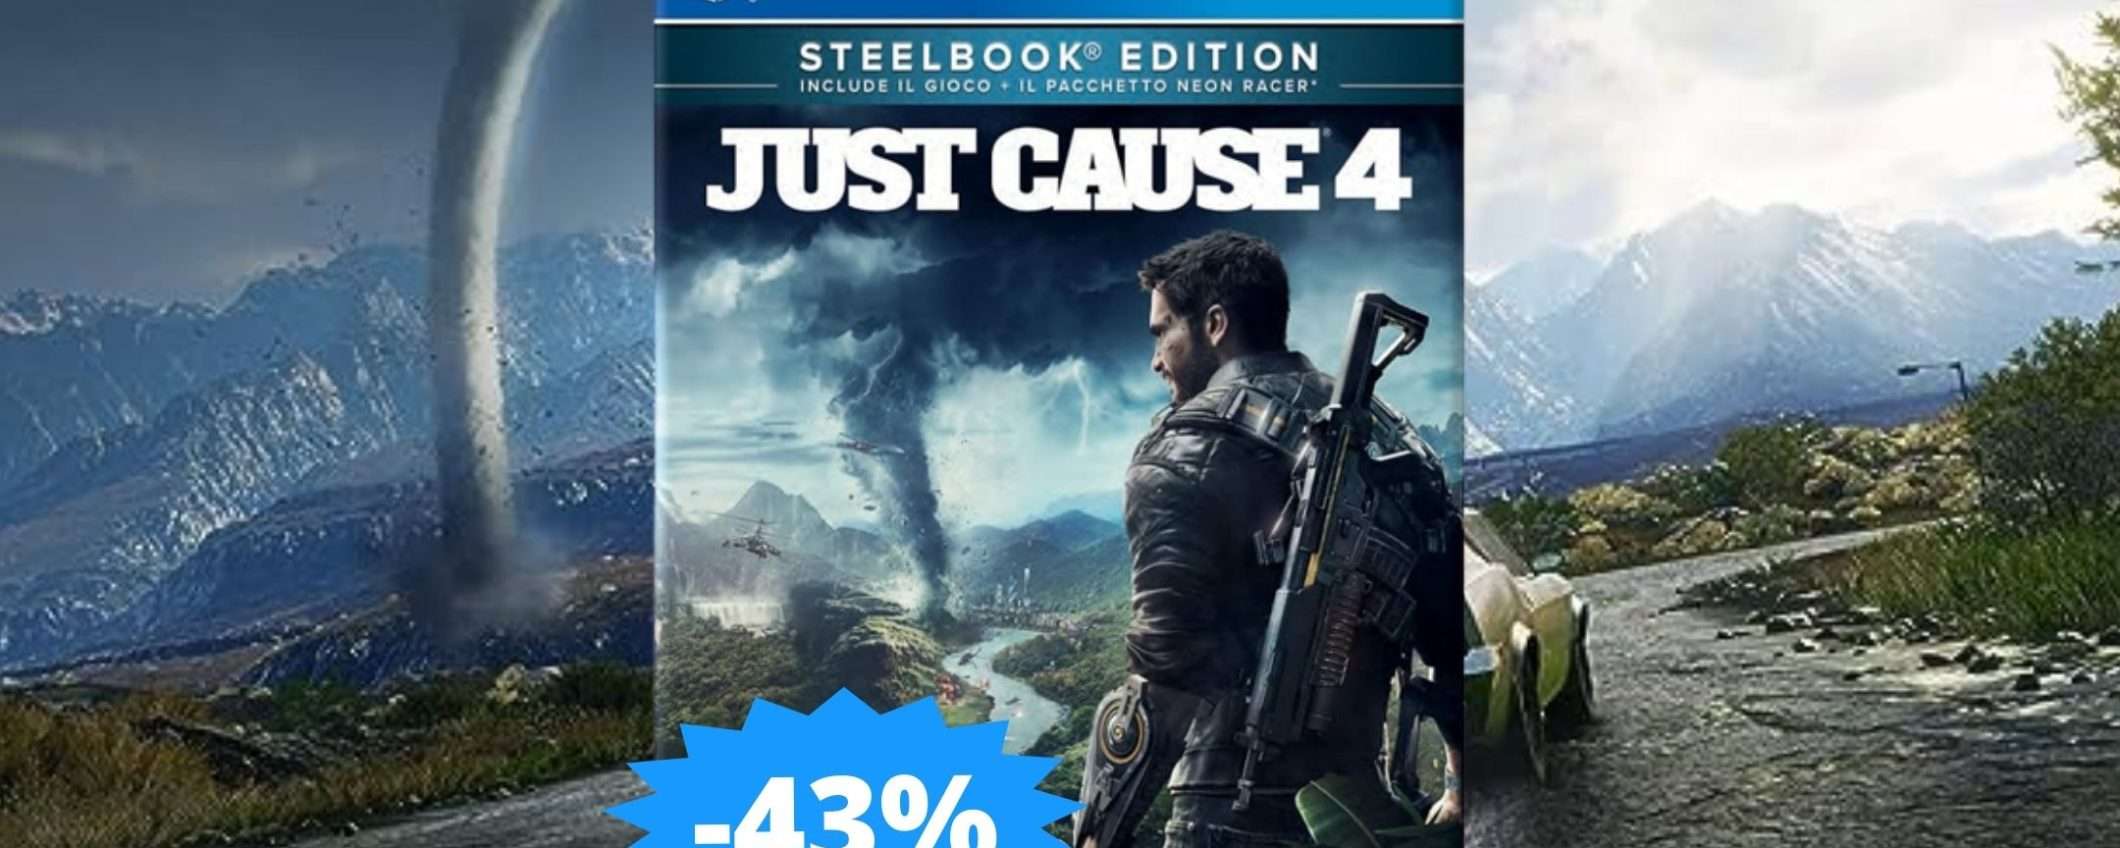 Just Cause 4 per PS4: CROLLO del prezzo su Amazon (-43%)